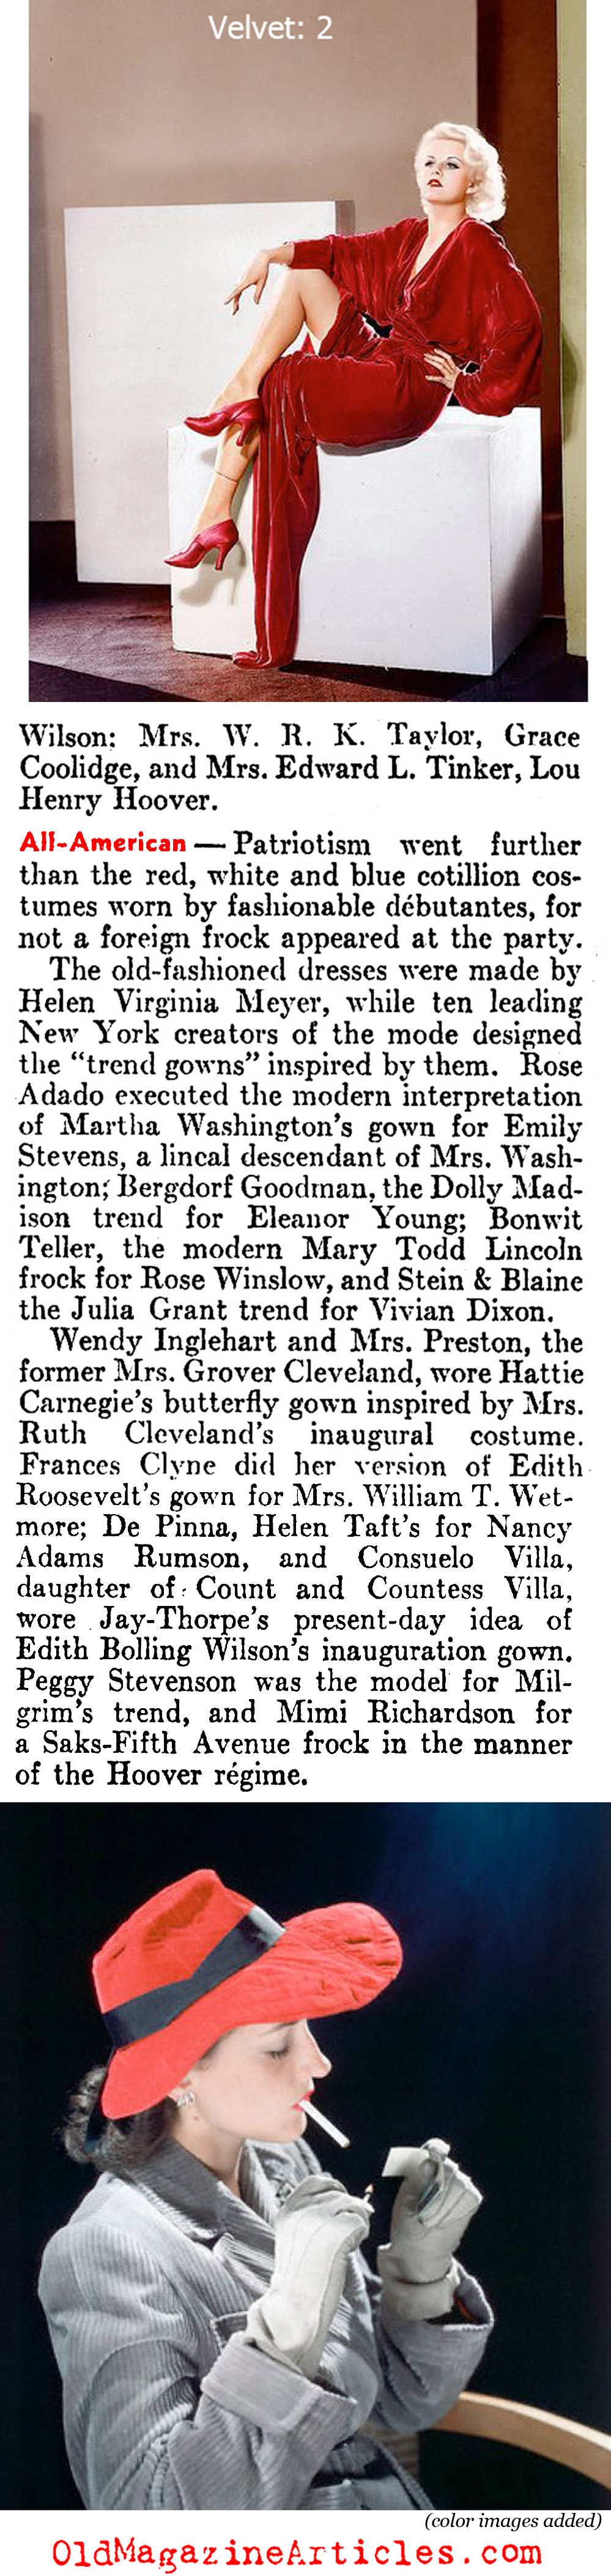 The New Glamour of Velvet (Literary Digest, 1936)